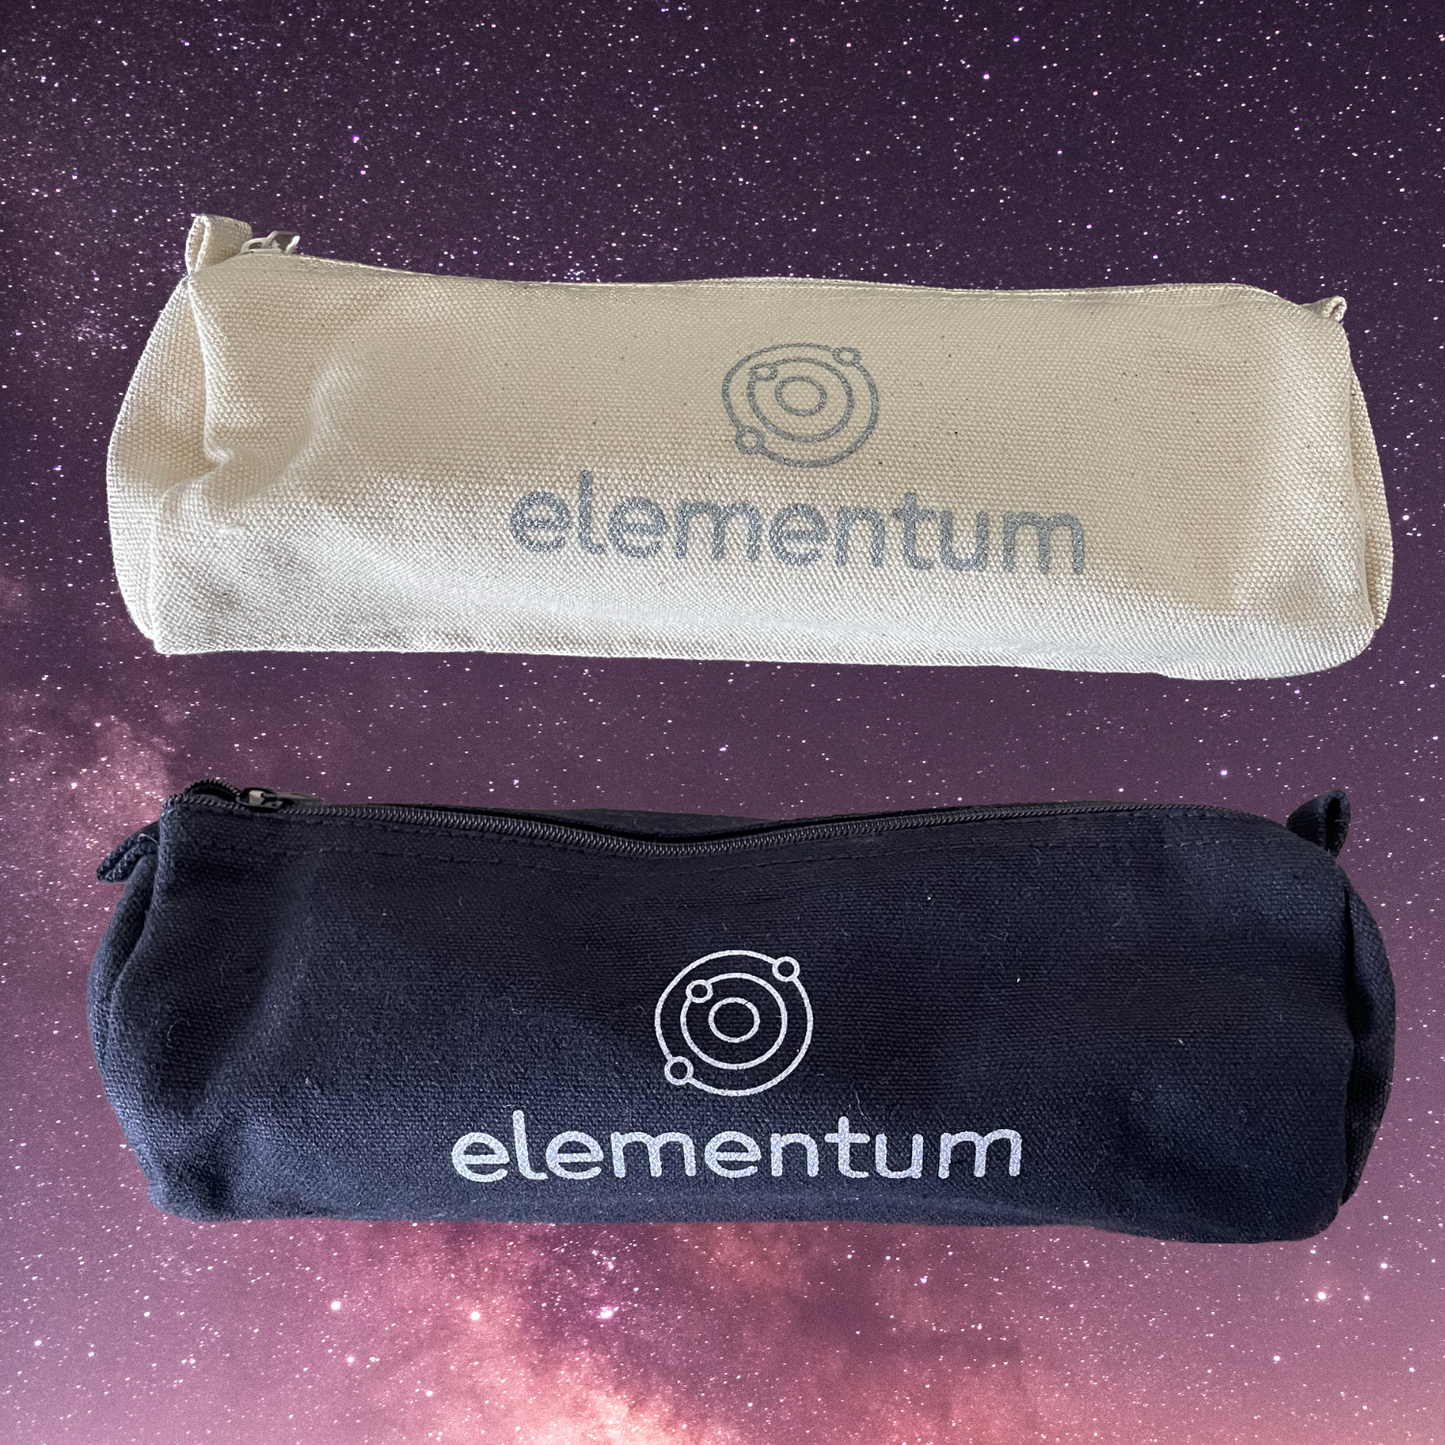 Elementum Pencil Case